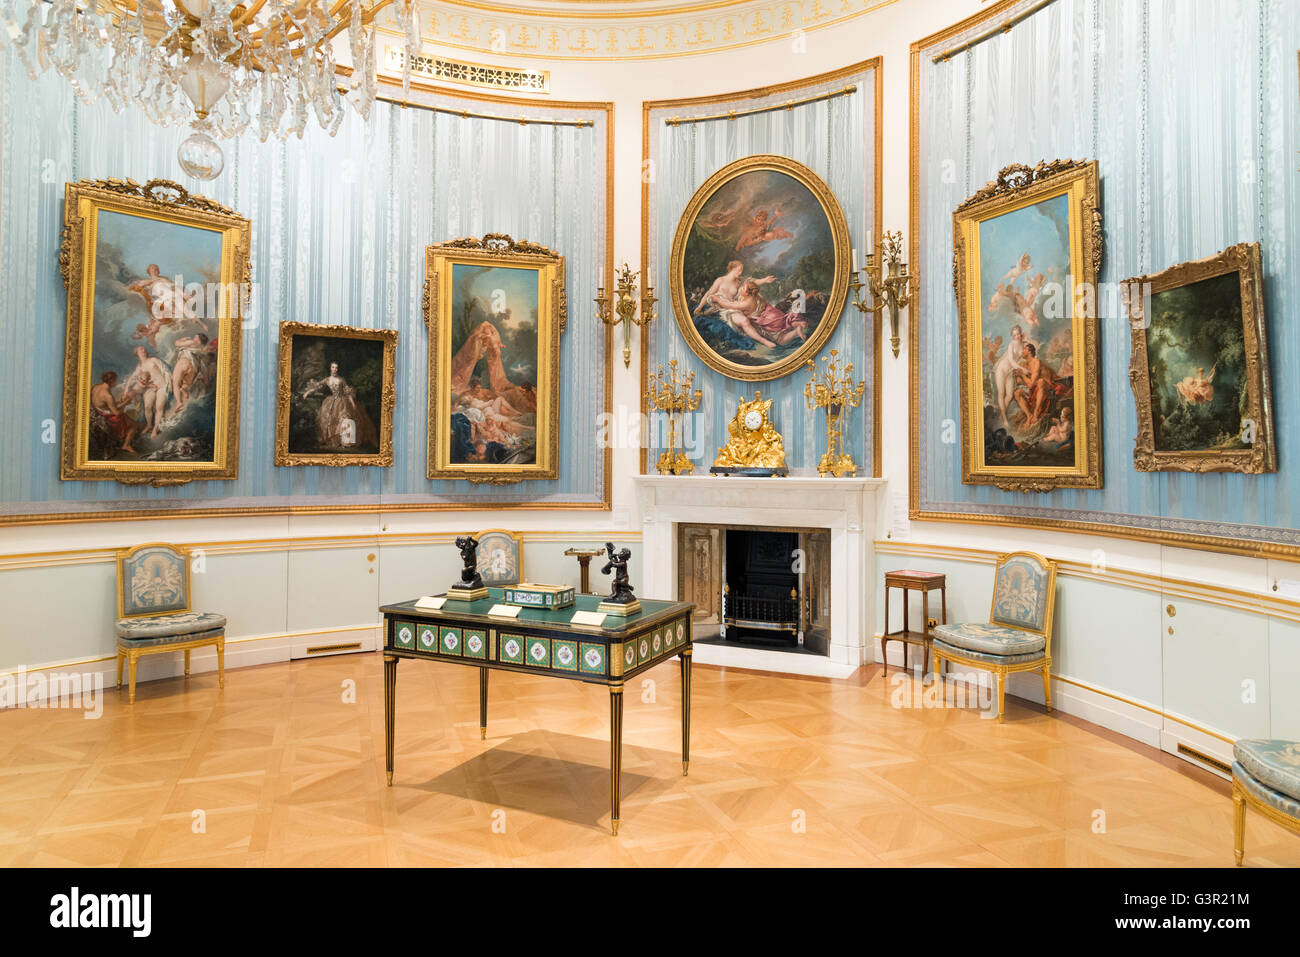 Peintures Rococo dans le salon Ovale de la Wallace Collection Art Gallery, Londres, Angleterre, Royaume-Uni Banque D'Images